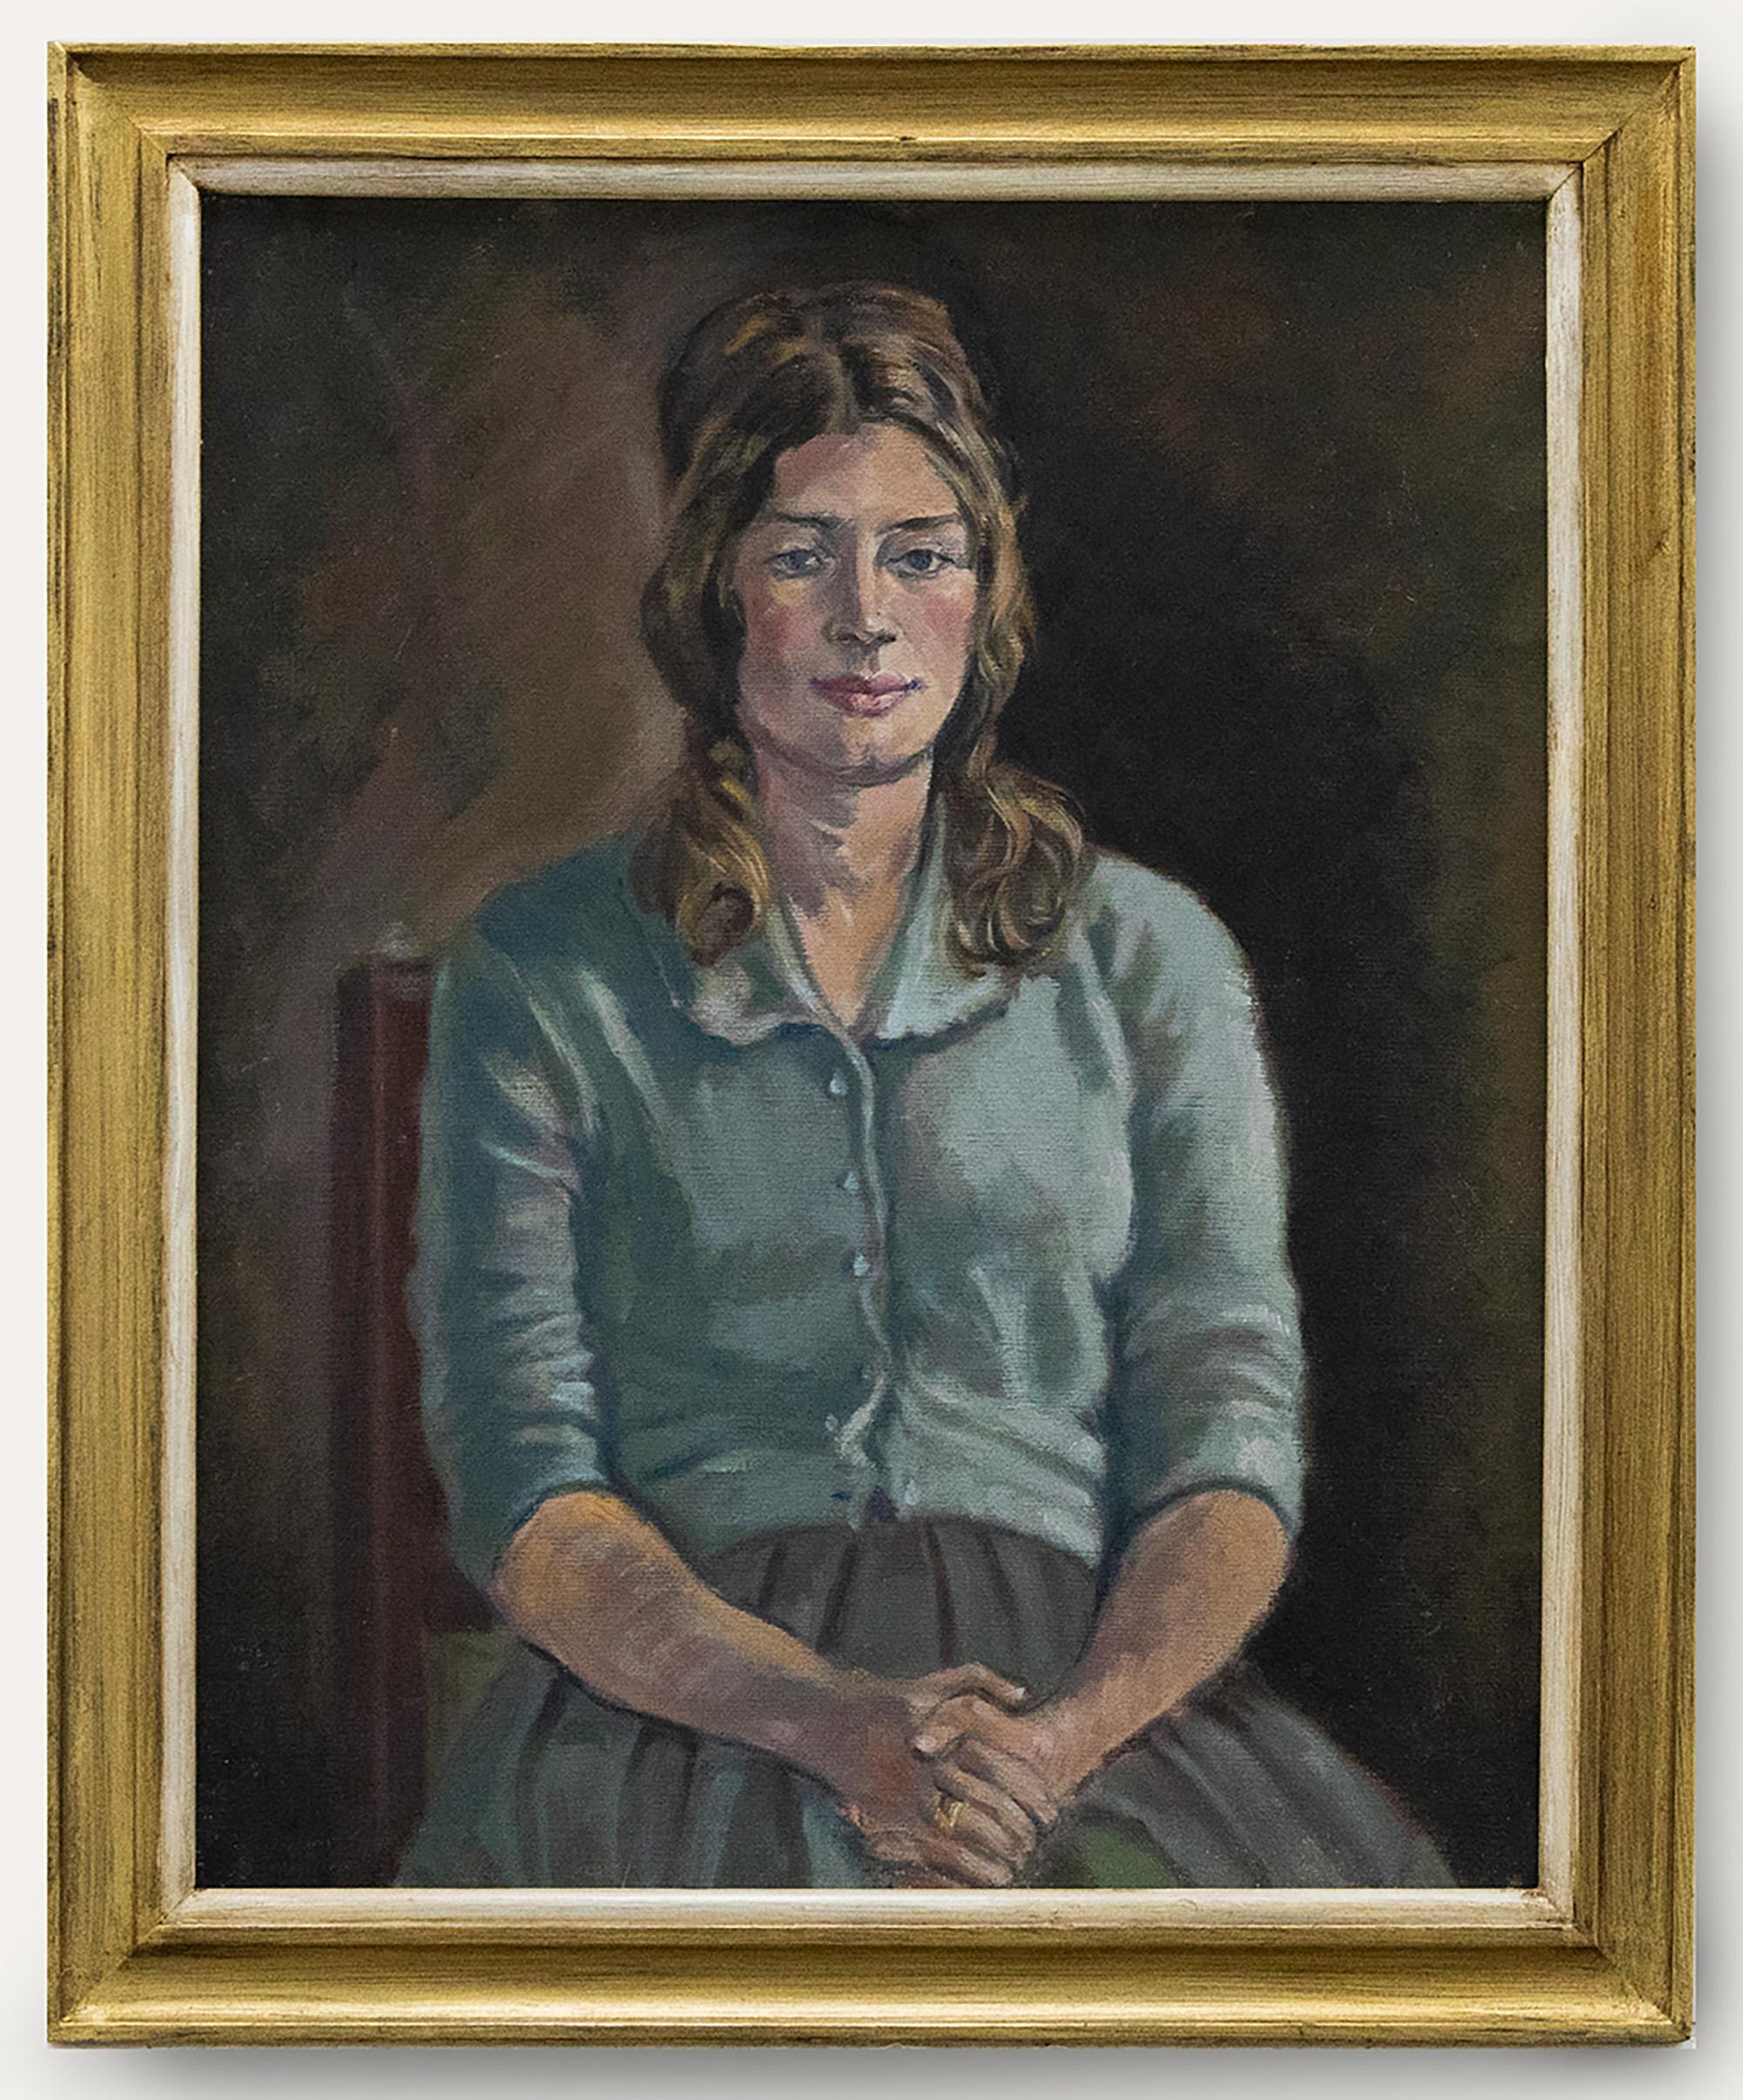 Ein charmantes Ölporträt einer sitzenden jungen Dame in hellblauer Strickjacke und Faltenrock. Gut präsentiert in einem vergoldeten Holzrahmen mit einem weißen Innenfenster. Nicht signiert. Auf Leinwandkarton.